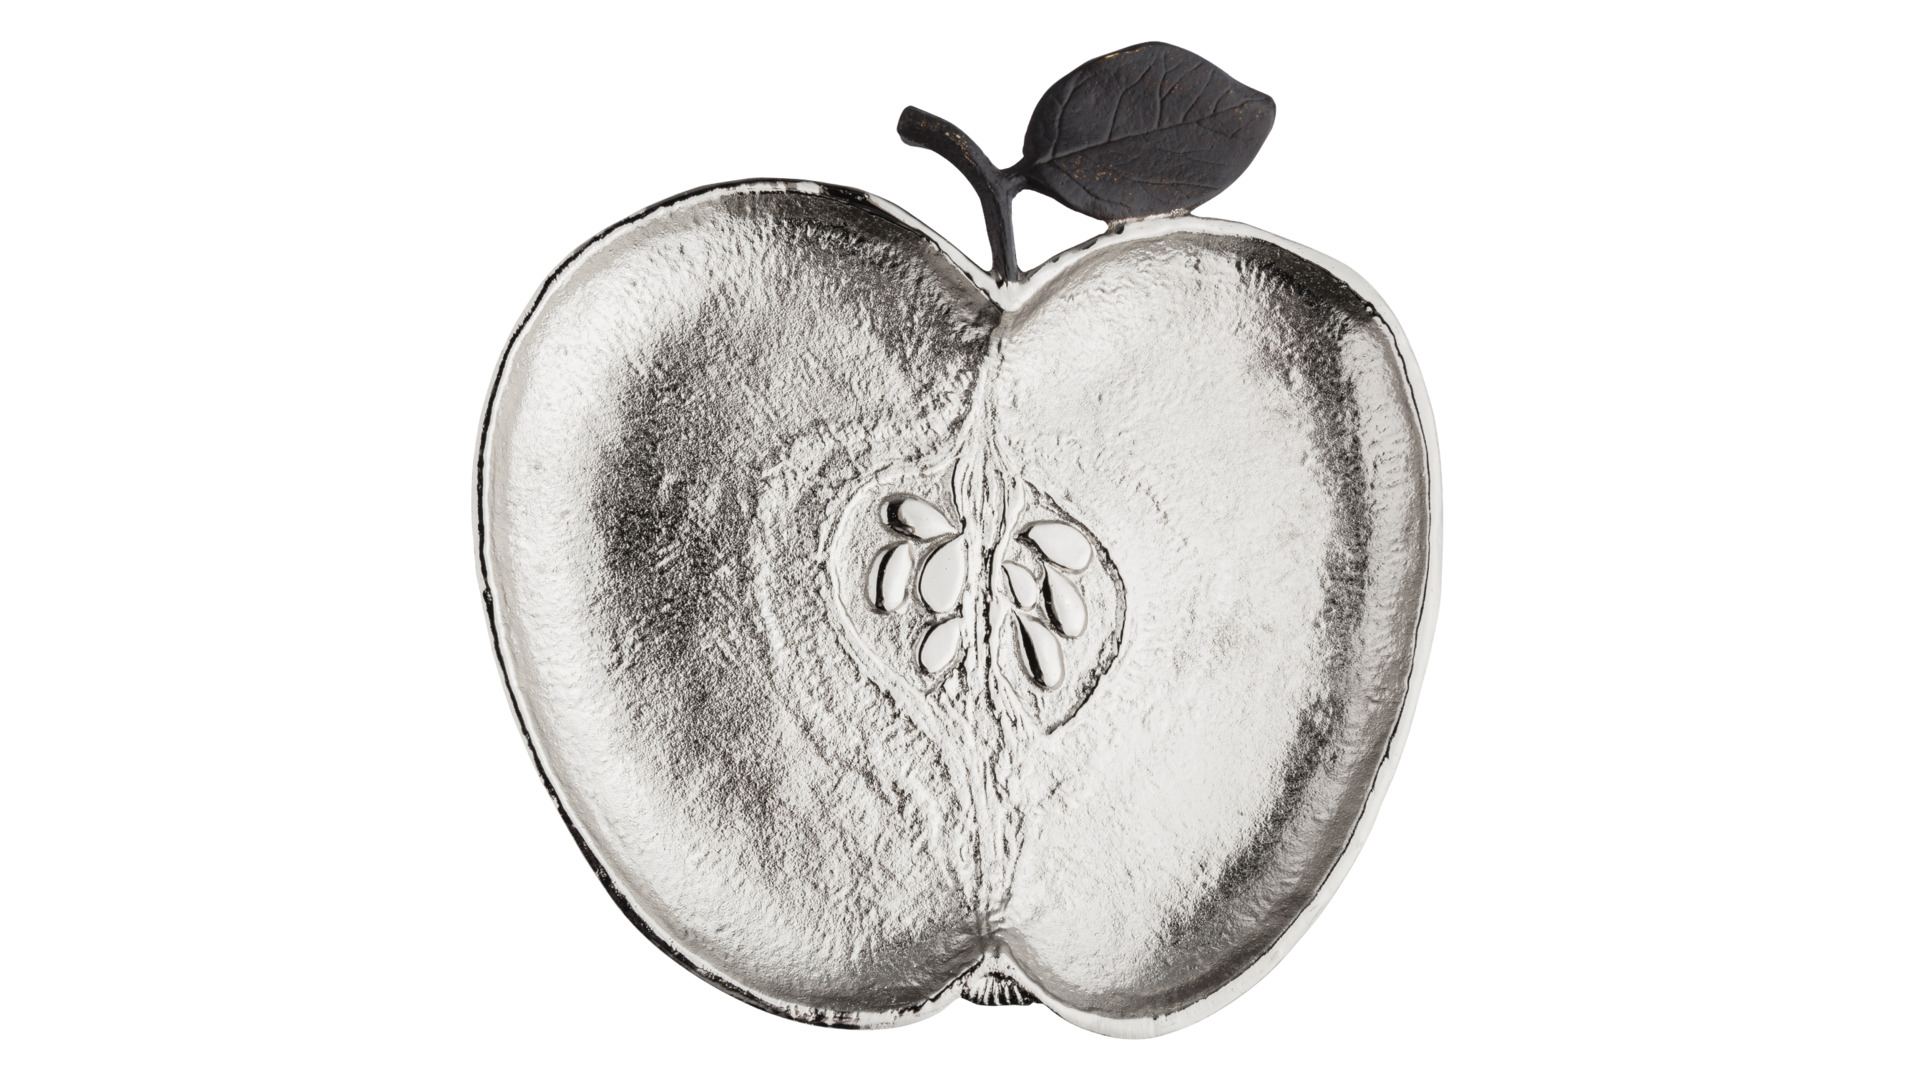 Блюдо-яблоко Michael Aram Серебряное яблоко 25 см